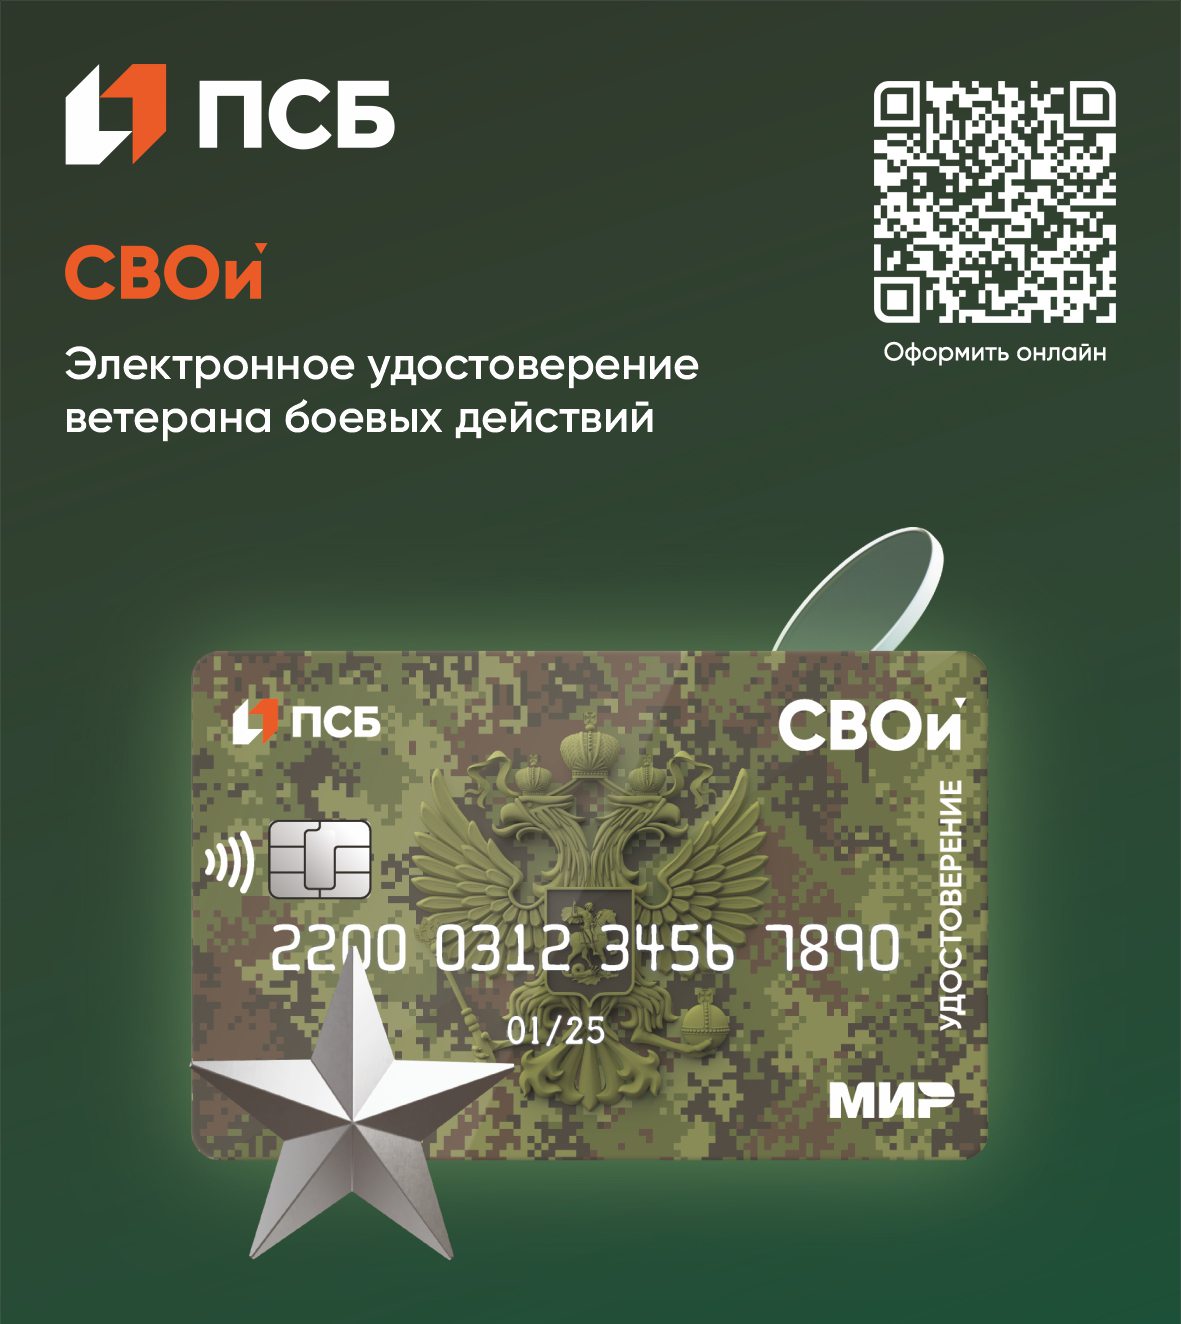 ПСБ первым в России начал выпуск многофункциональной карты «СВОи»